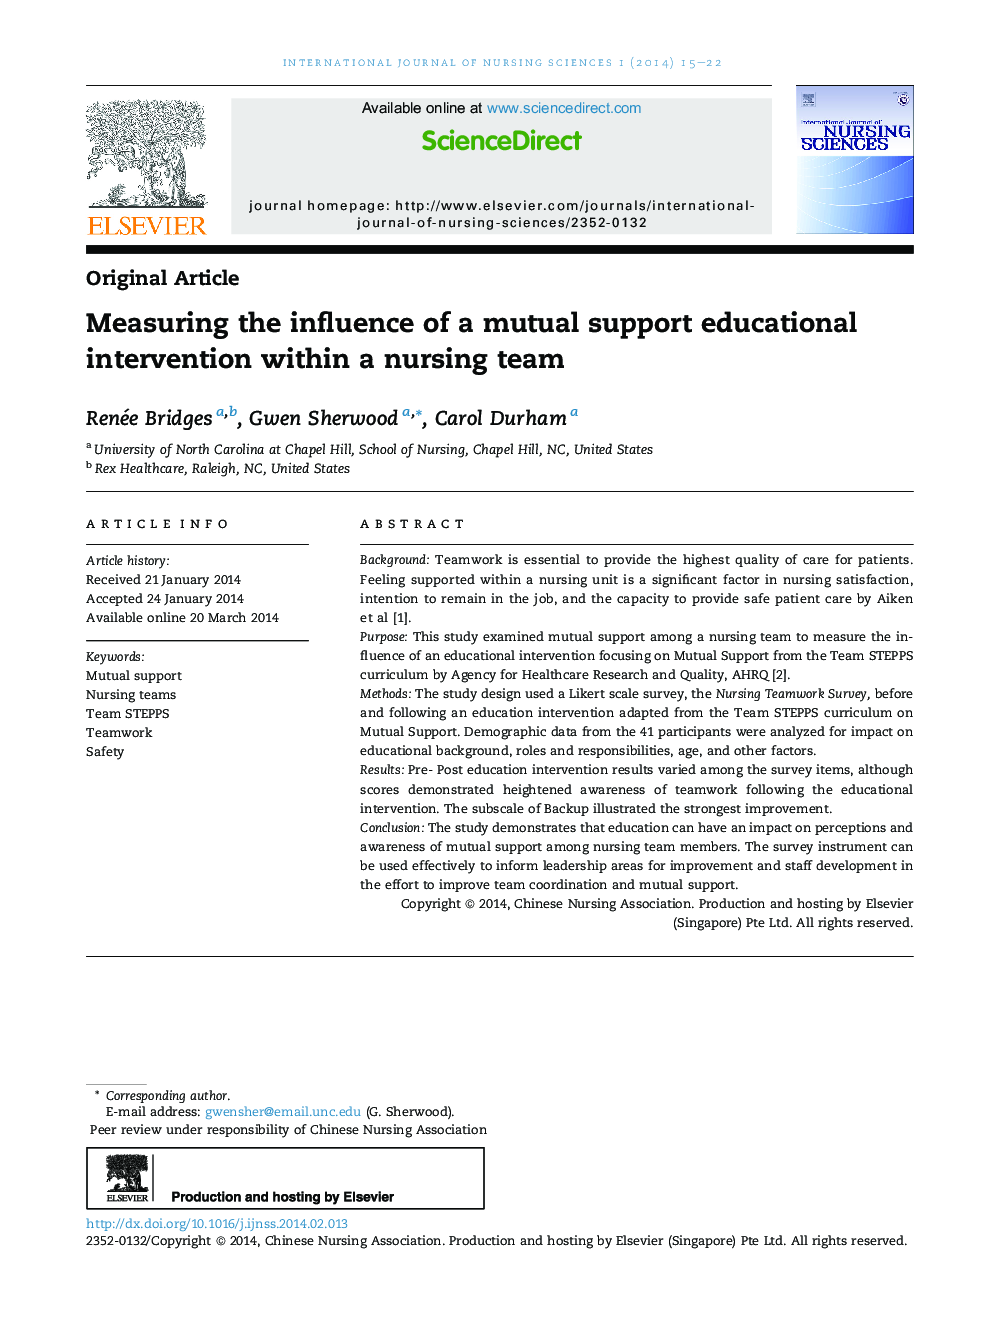 سنجش تاثیر مداخله آموزشی حمایت متقابل در یک تیم پرستاری